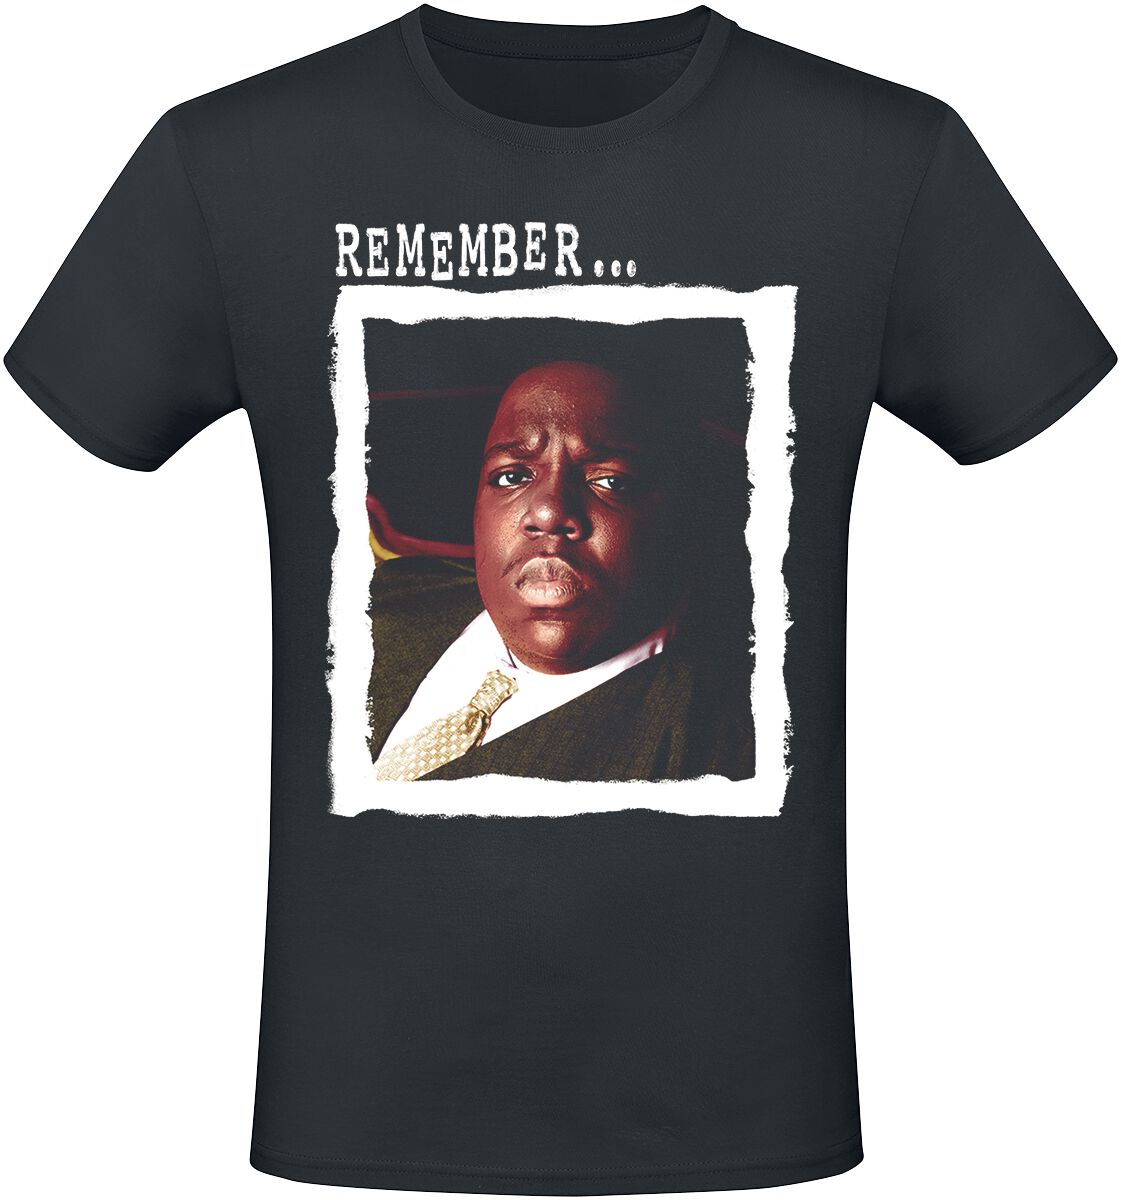 Notorious B.I.G. T-Shirt - Remember - S bis XXL - für Männer - Größe XXL - schwarz  - Lizenziertes Merchandise!